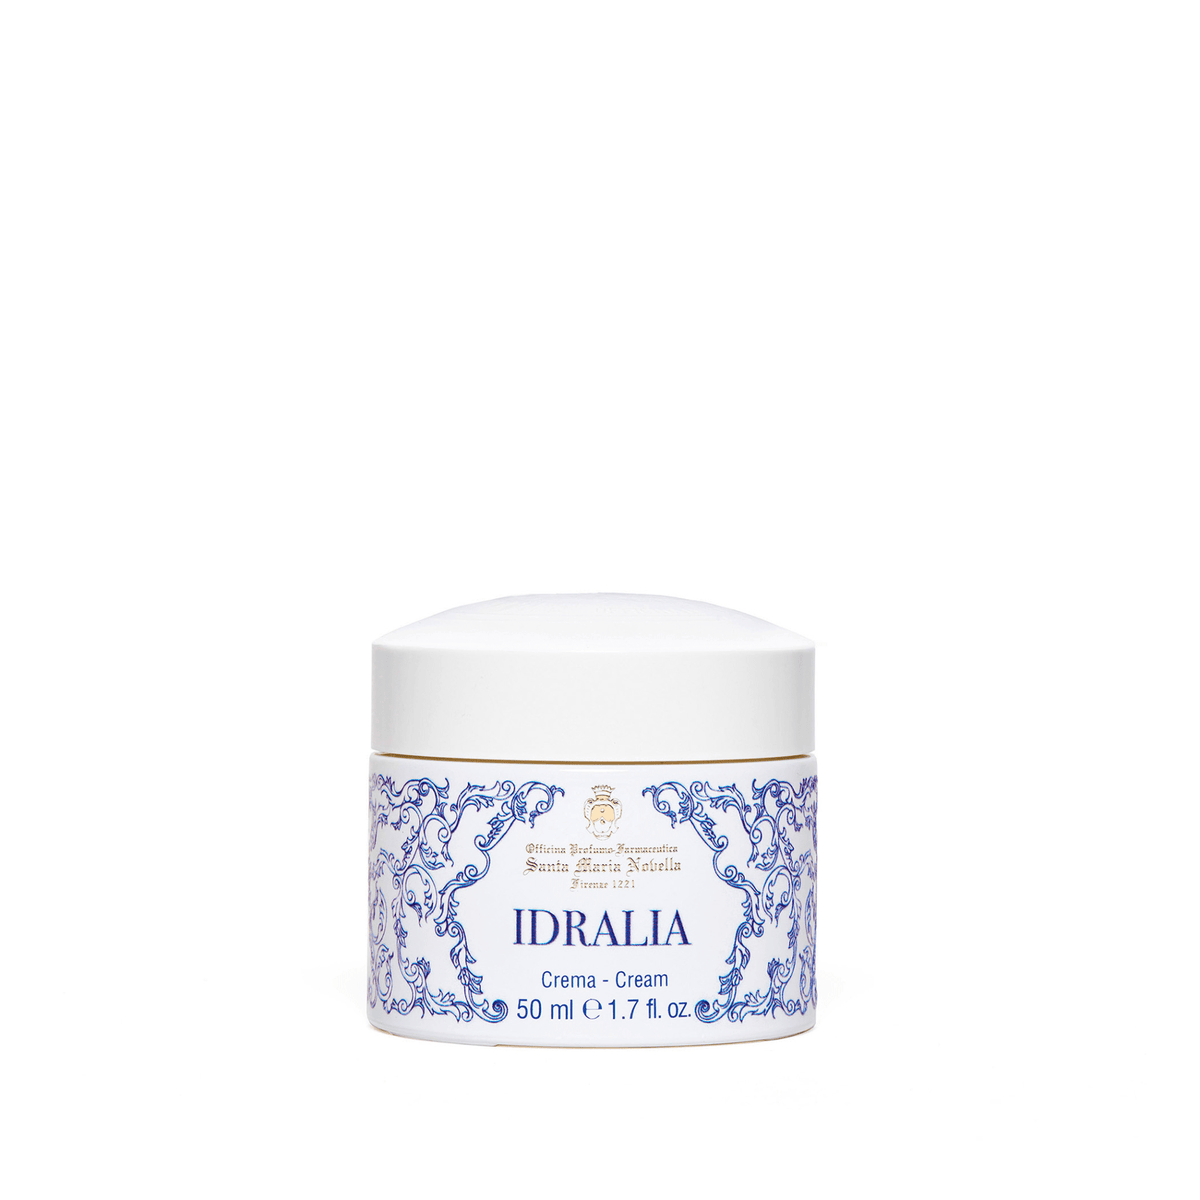 Primary Image of Idralia Cream (Crema Idralia)